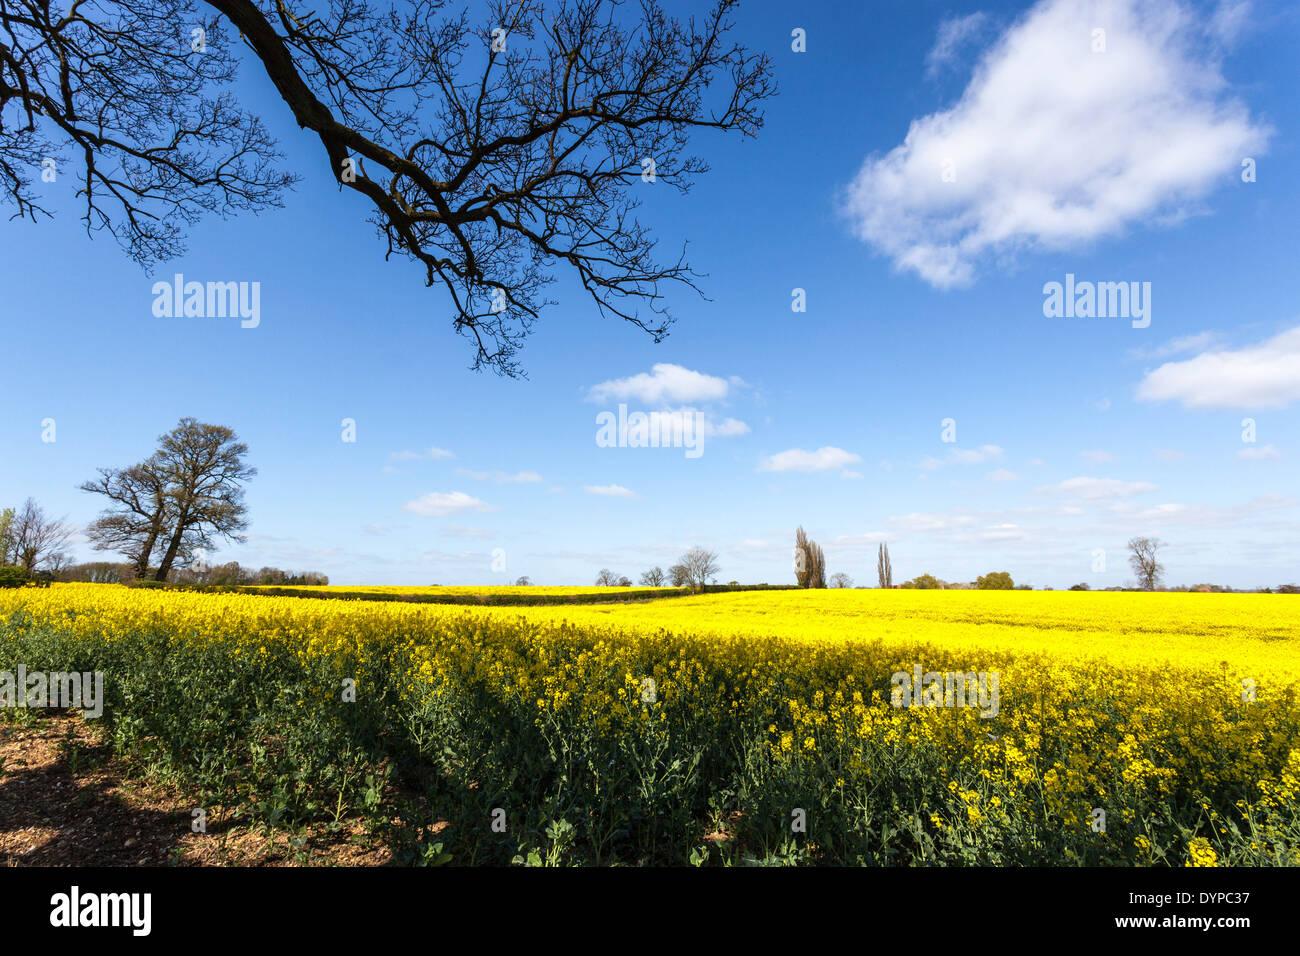 Die intensiven gelben Blüten eines Raps-Feldes gegen den blauen Himmel, St Albans, Hertfordshire, England, UK. Stockfoto